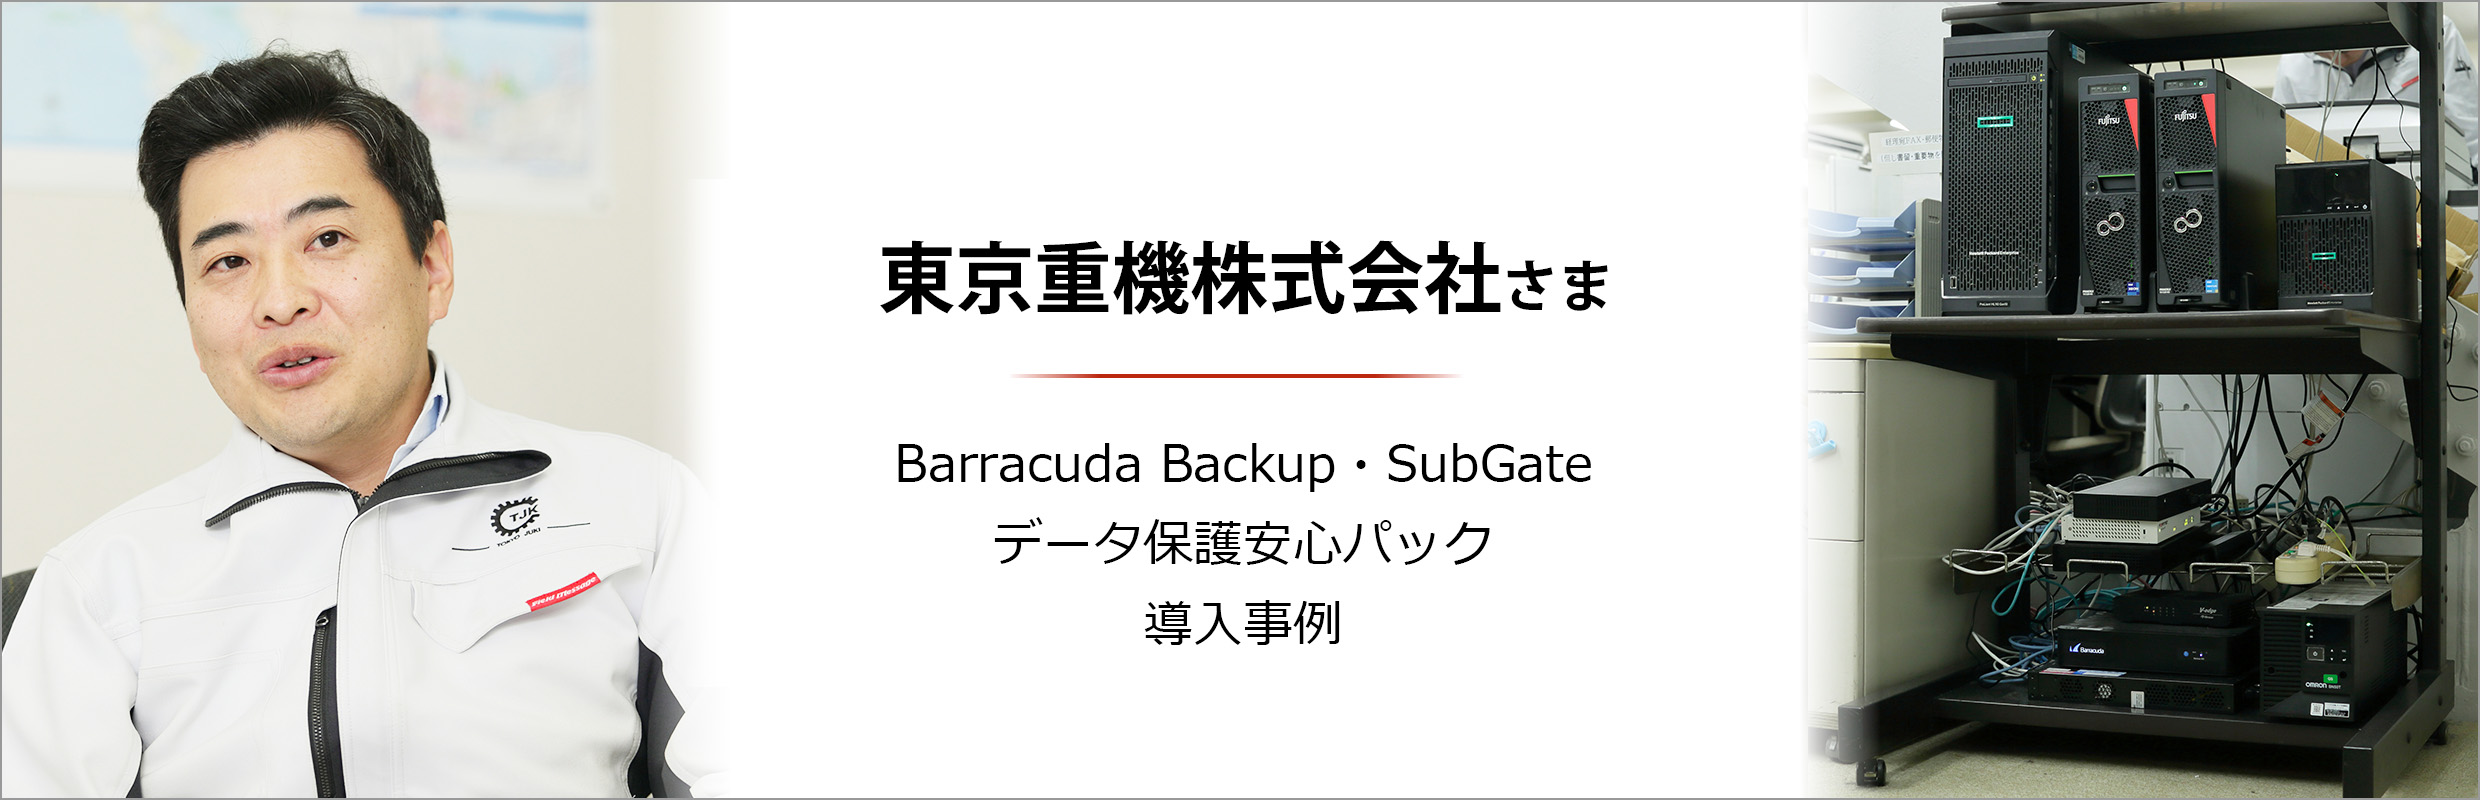 東京重機株式会社さま Barracuda Backup・SubGate・データ保護安心パック 導入事例